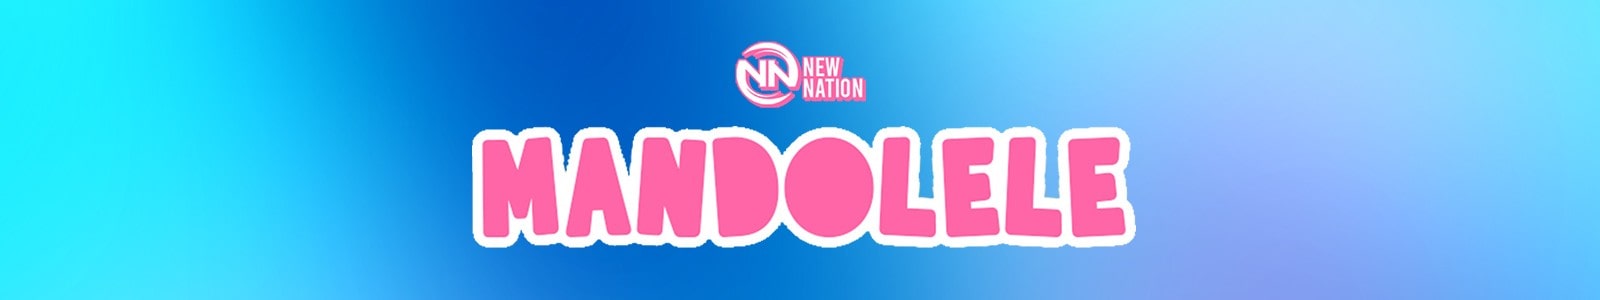 Mandolin & Ukulele by New Nation